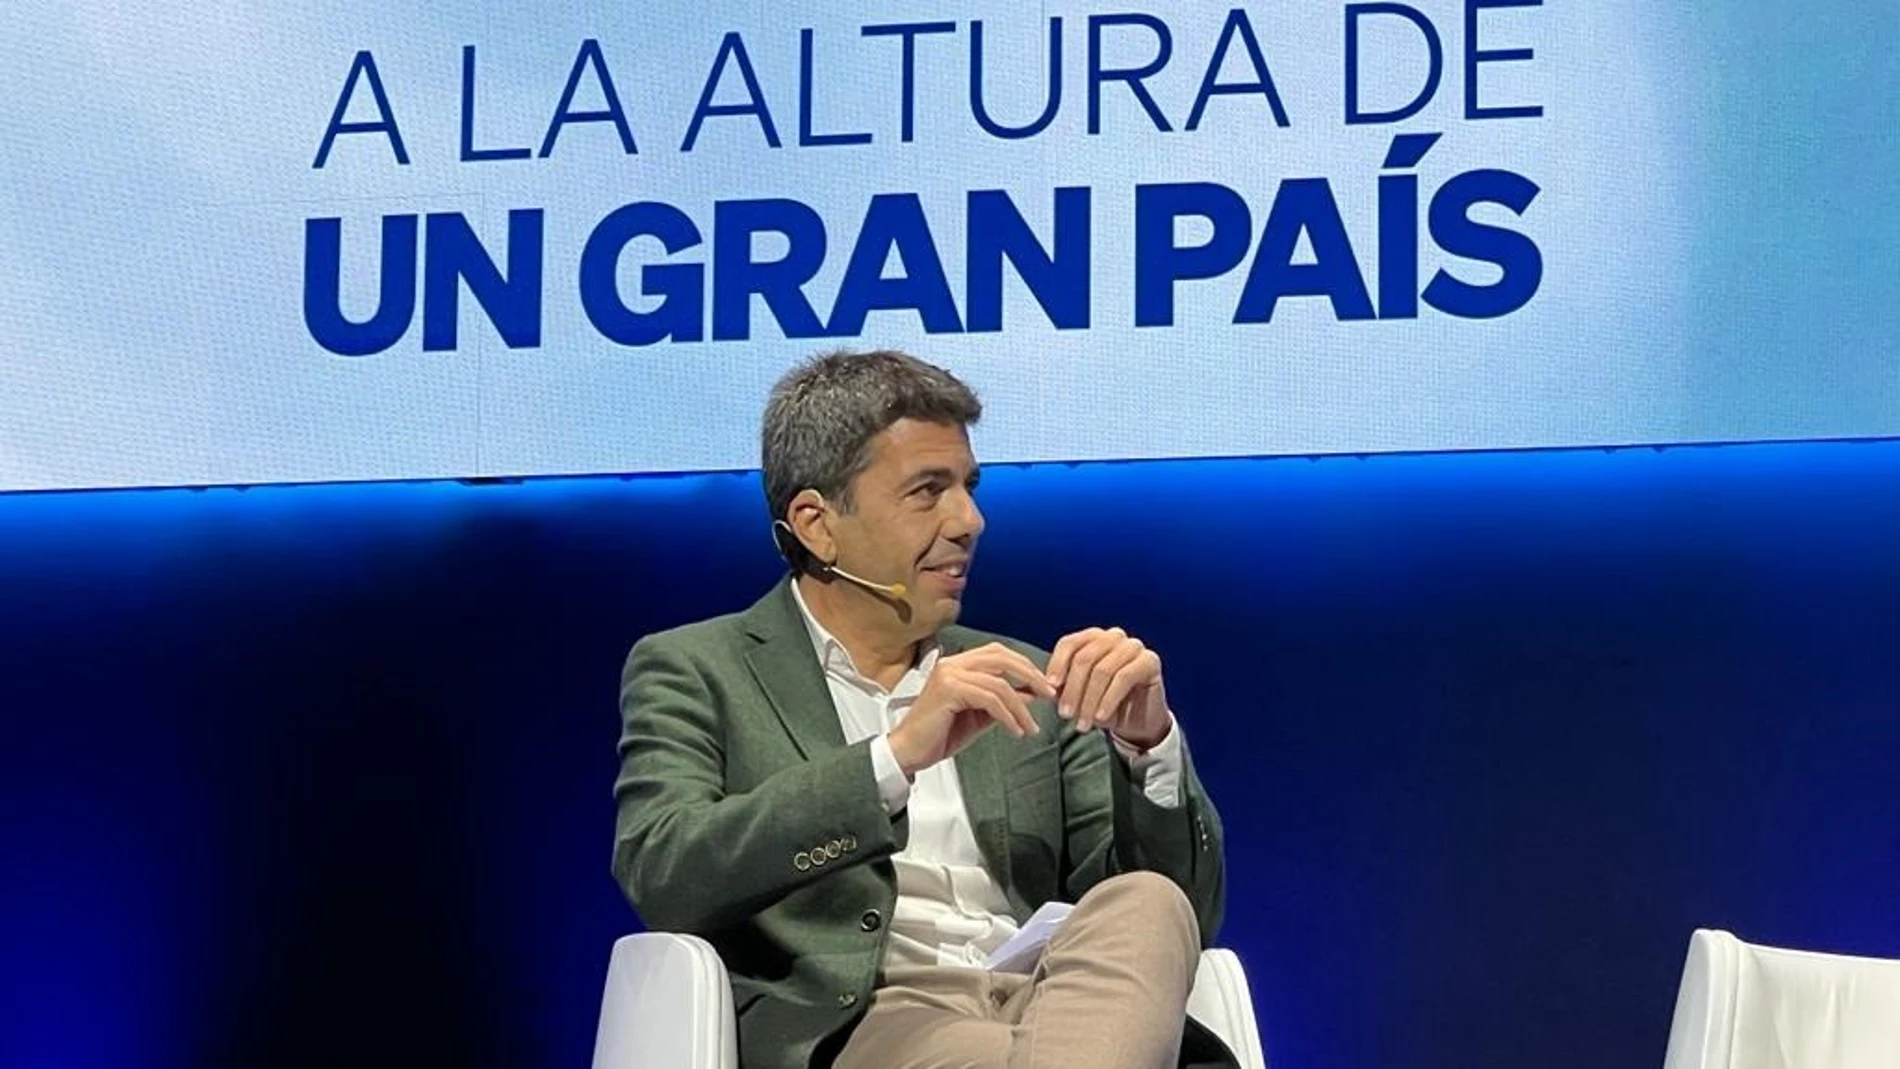 El presidente del PPCV, Carlos Mazón, en el acto del PP hoy en Zaragoza